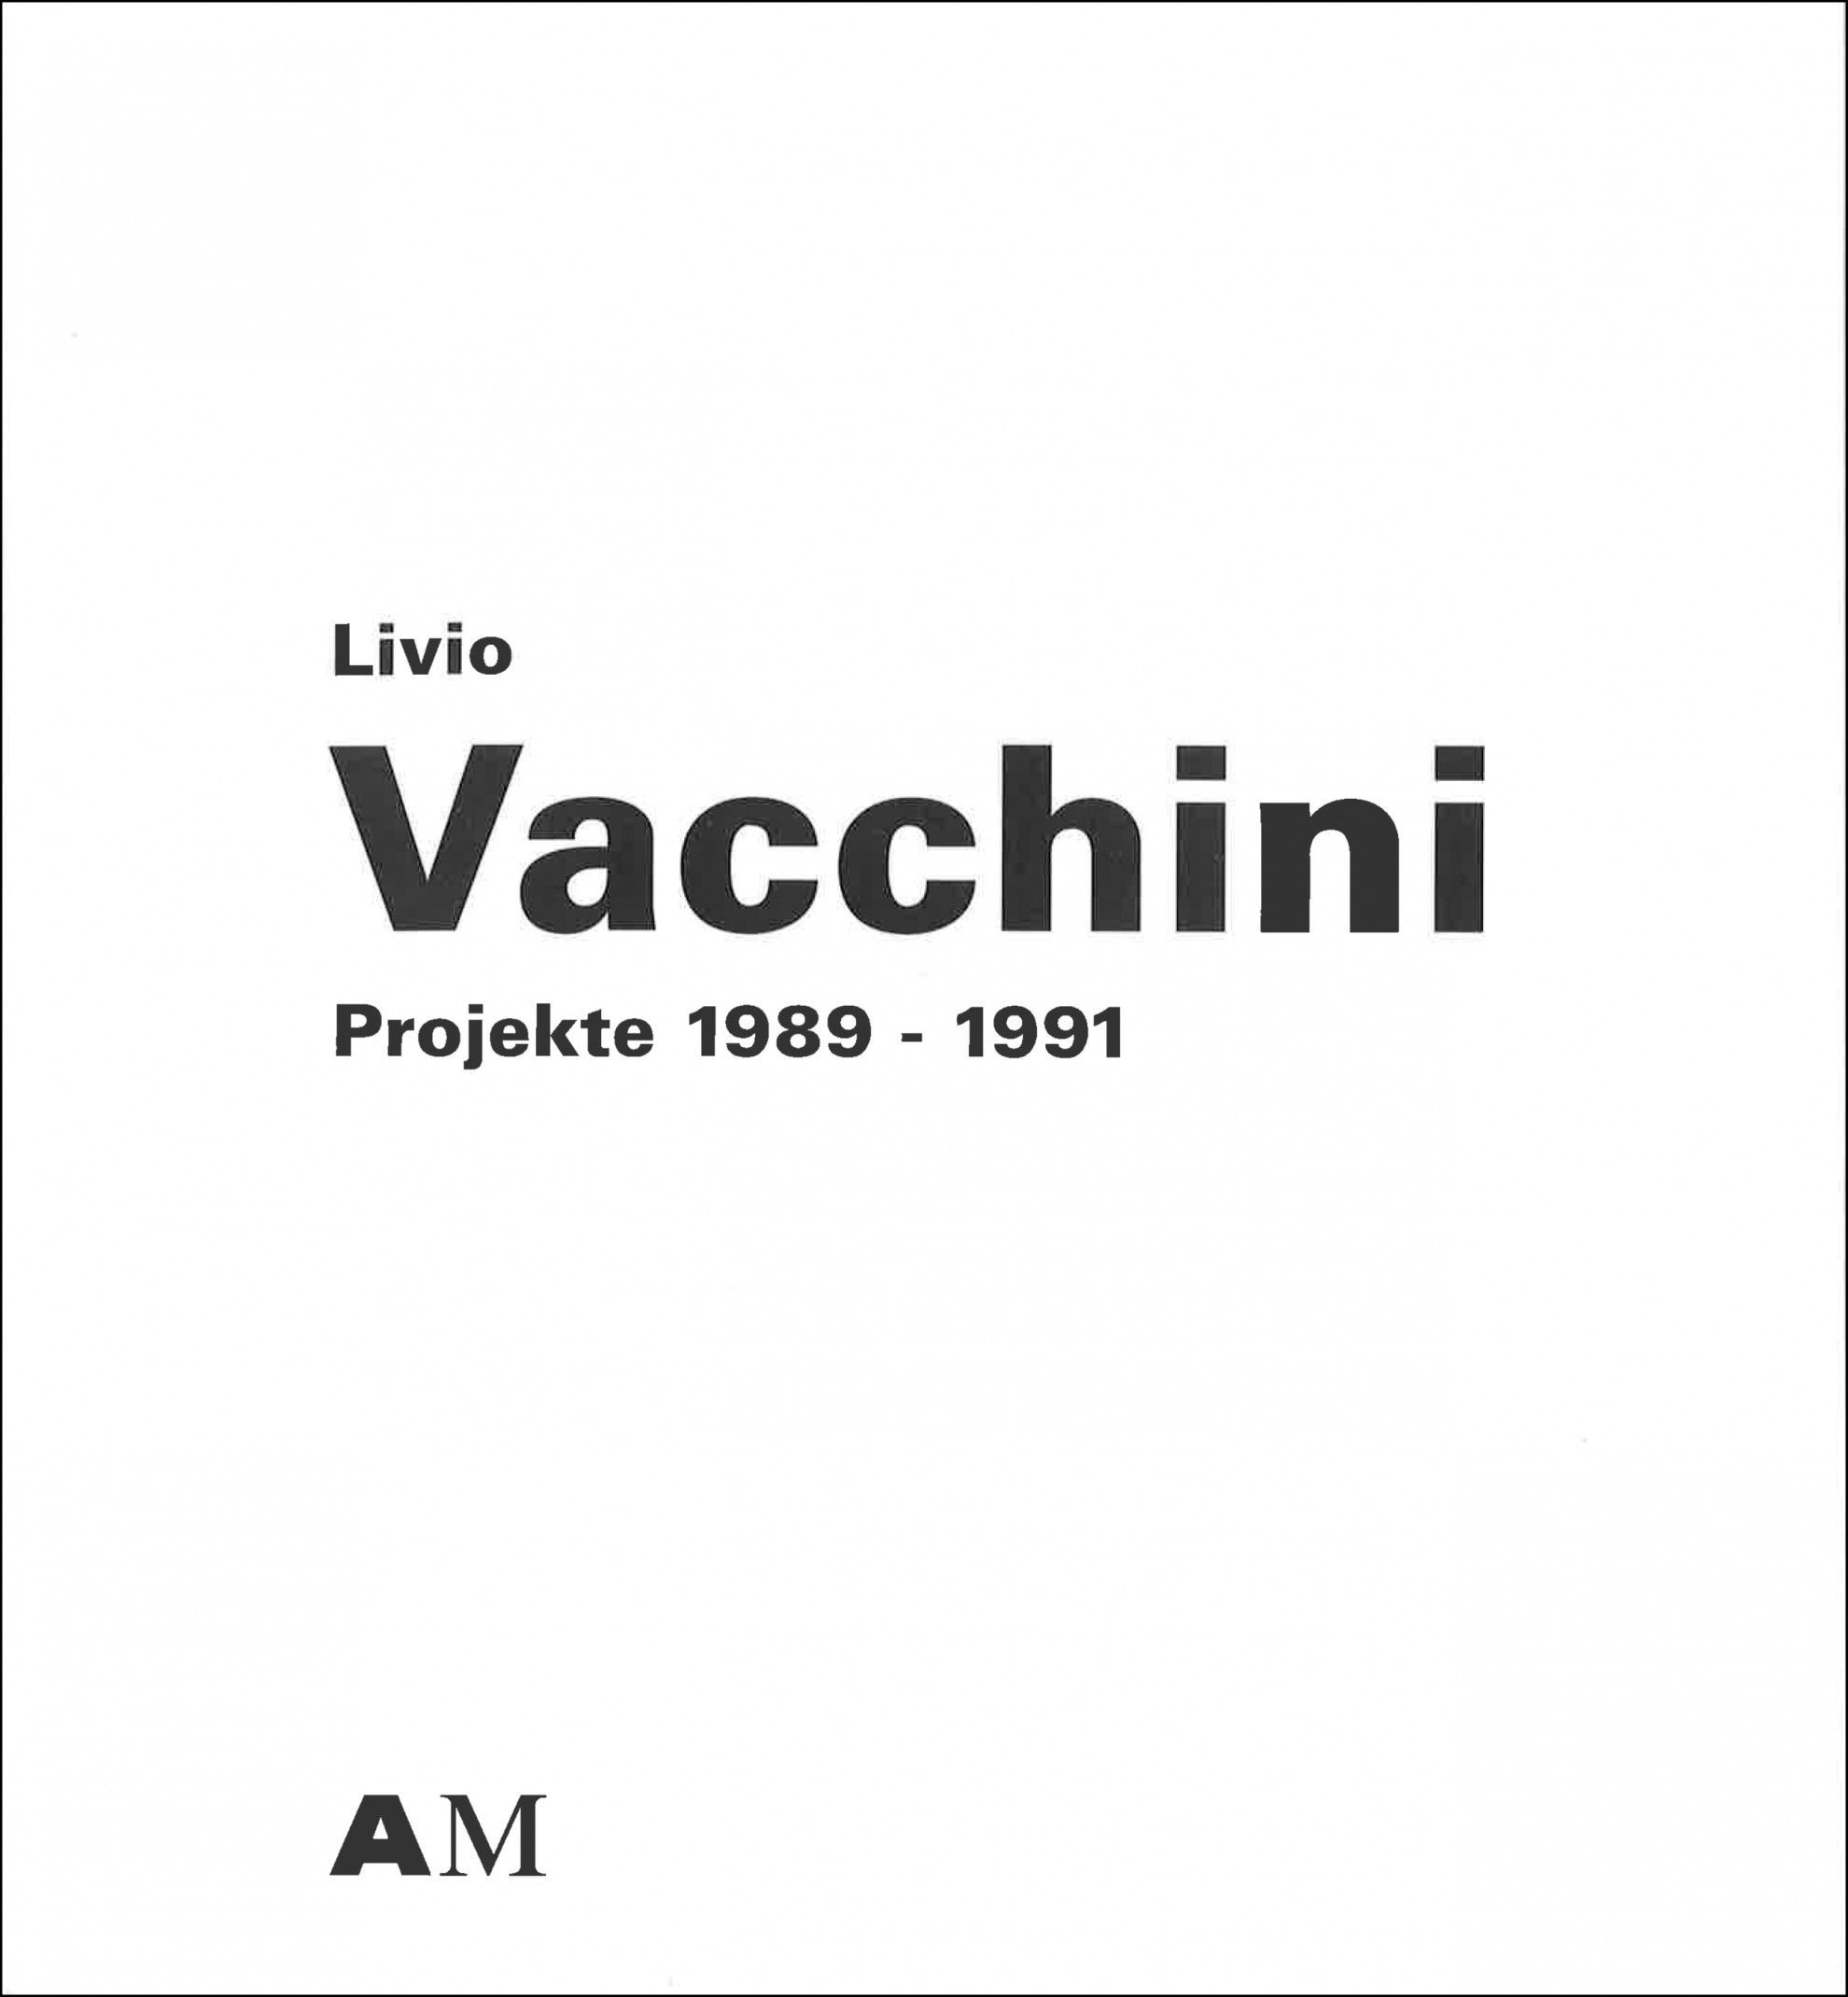 Livio Vacchini | S AM Schweizerisches Architekturmuseum